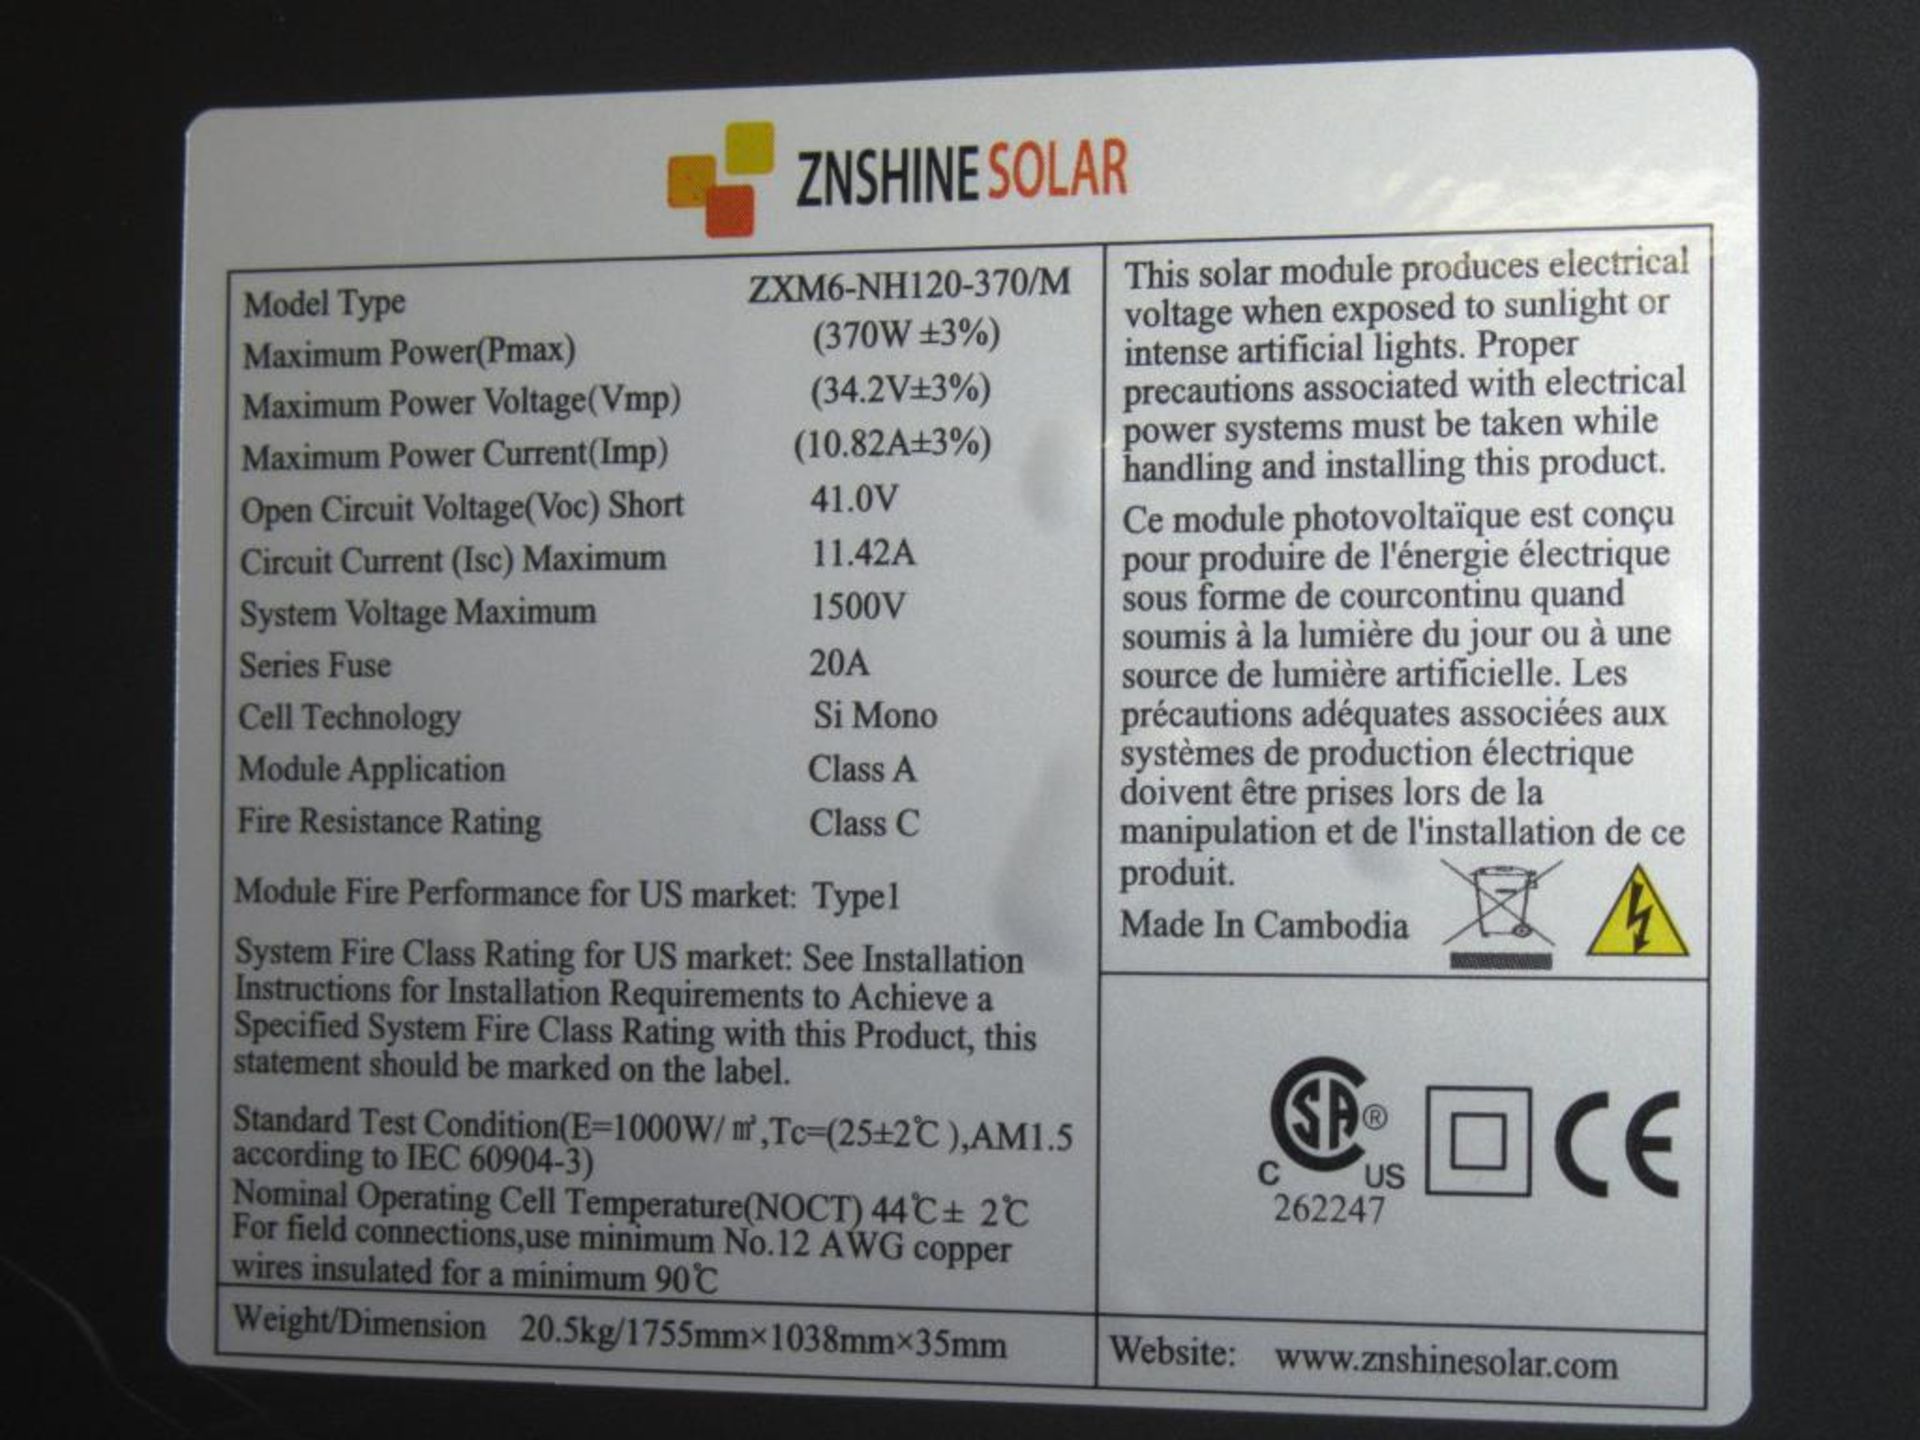 ZNShine Solar Panels - Image 6 of 6